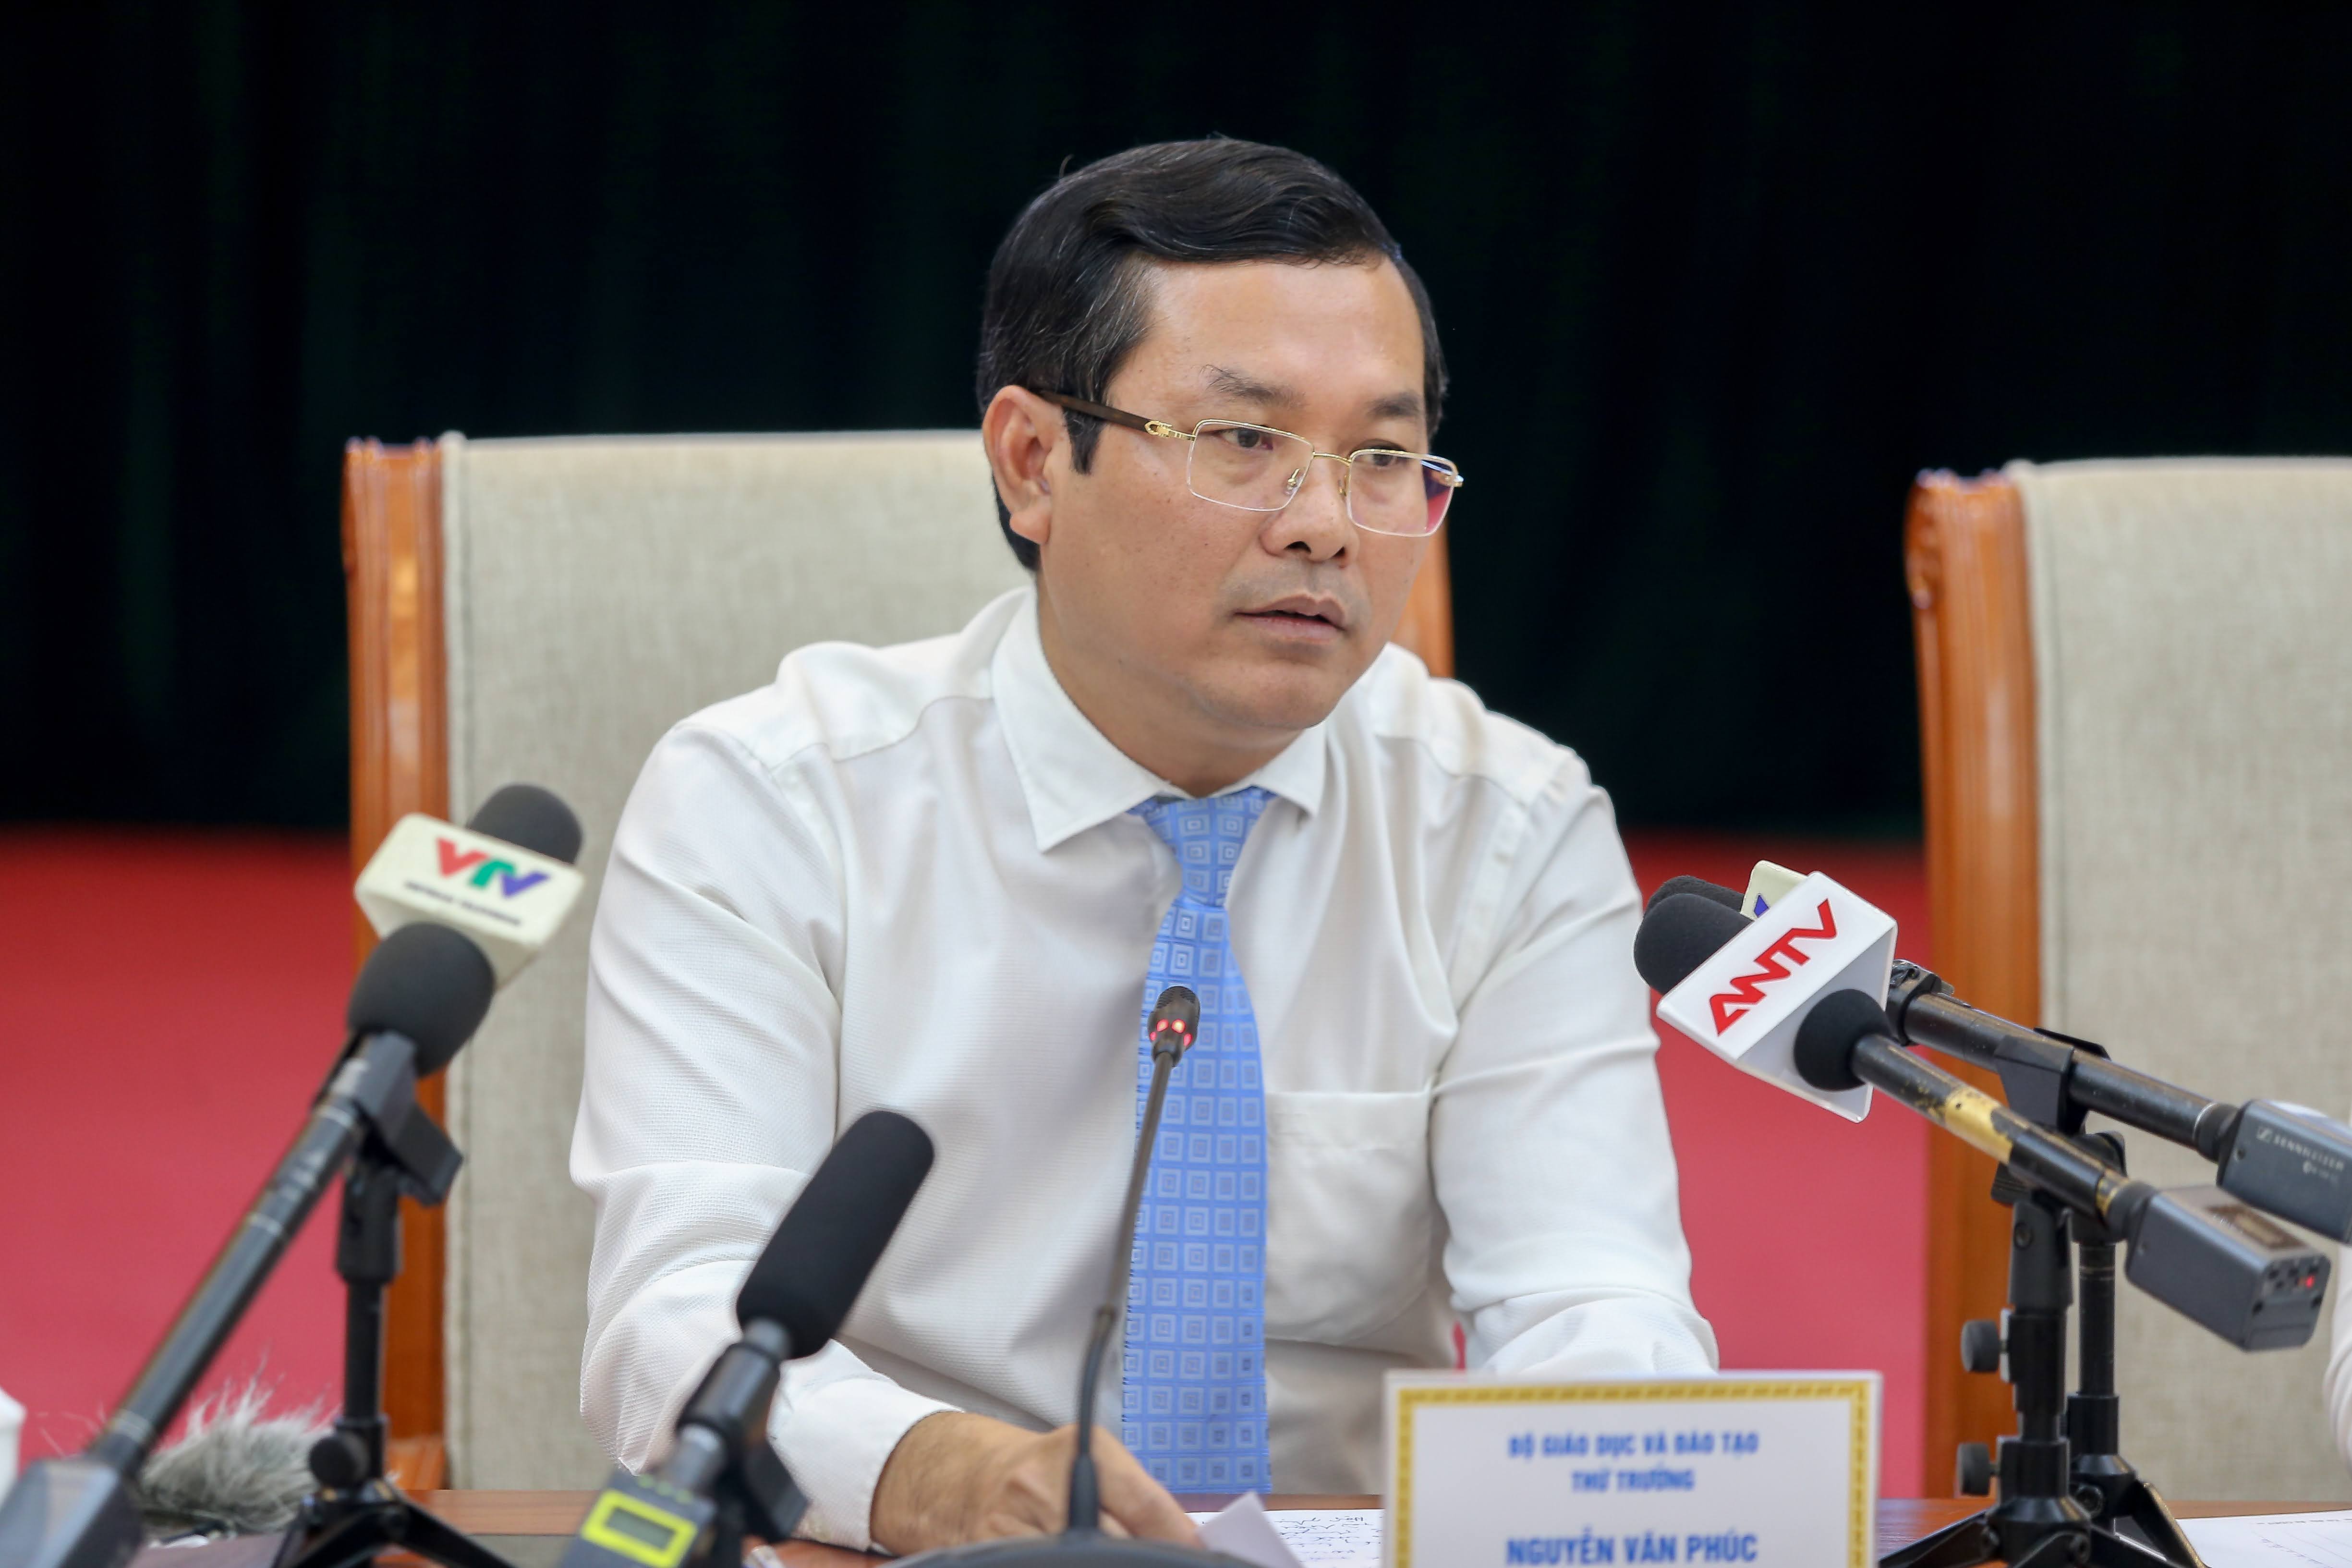 Thứ trưởng Bộ Giáo dục và Đào tạo Nguyễn Văn Phúc chủ trì buổi họp báo.